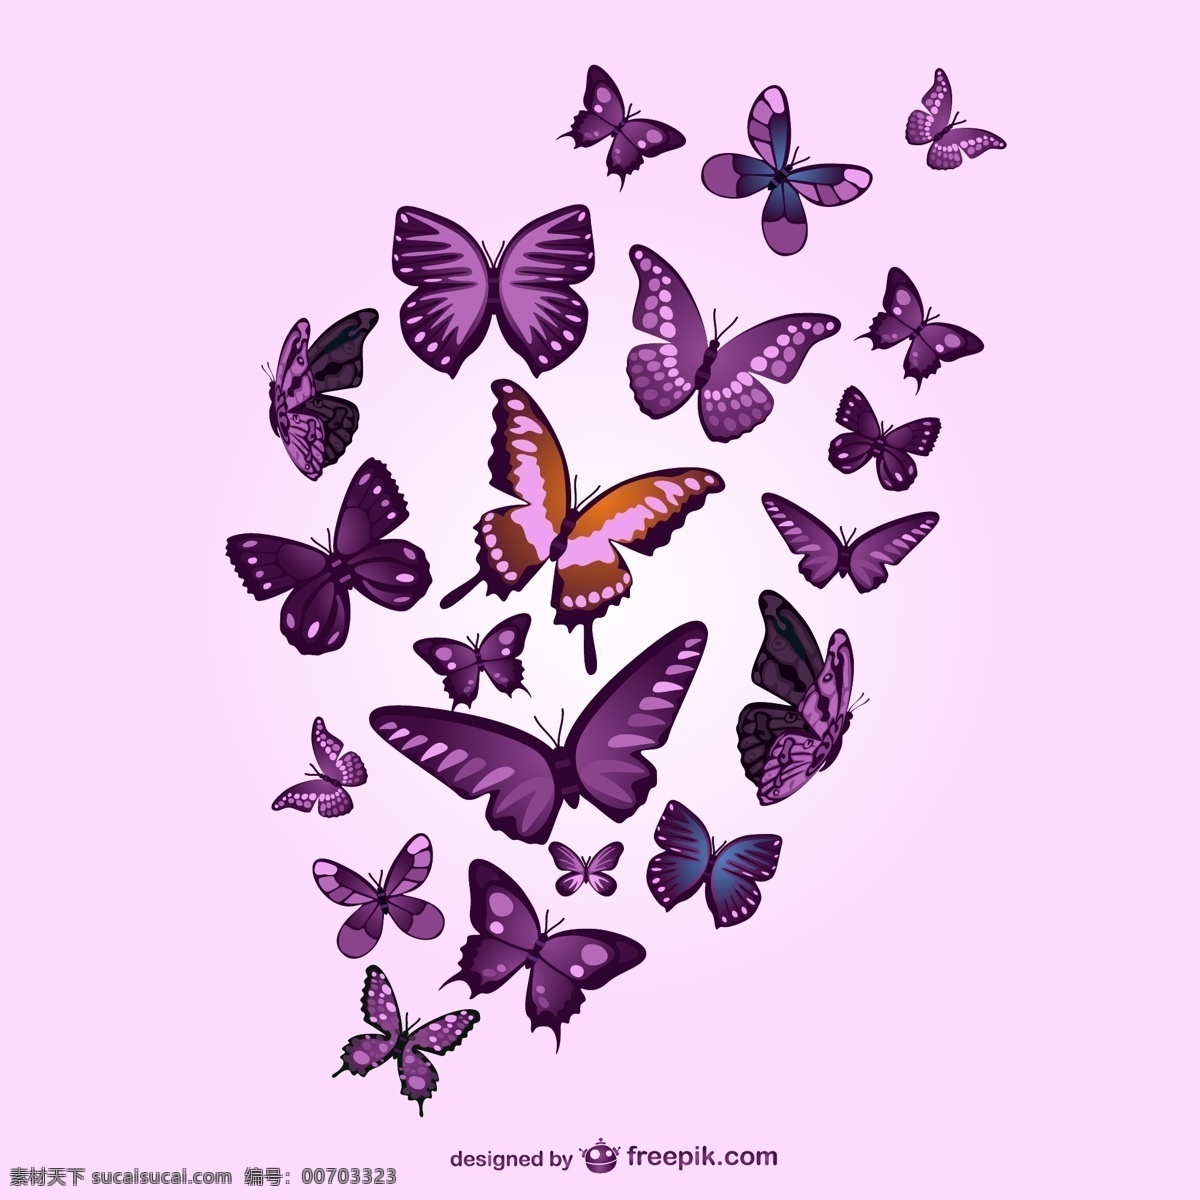 紫色 蝴蝶 粉红色 背景 夏天 自然 模板 春天 图形 布局 平面设计 色彩 装饰 元素 粉红色背景 丰富多彩 设计元素 粉色